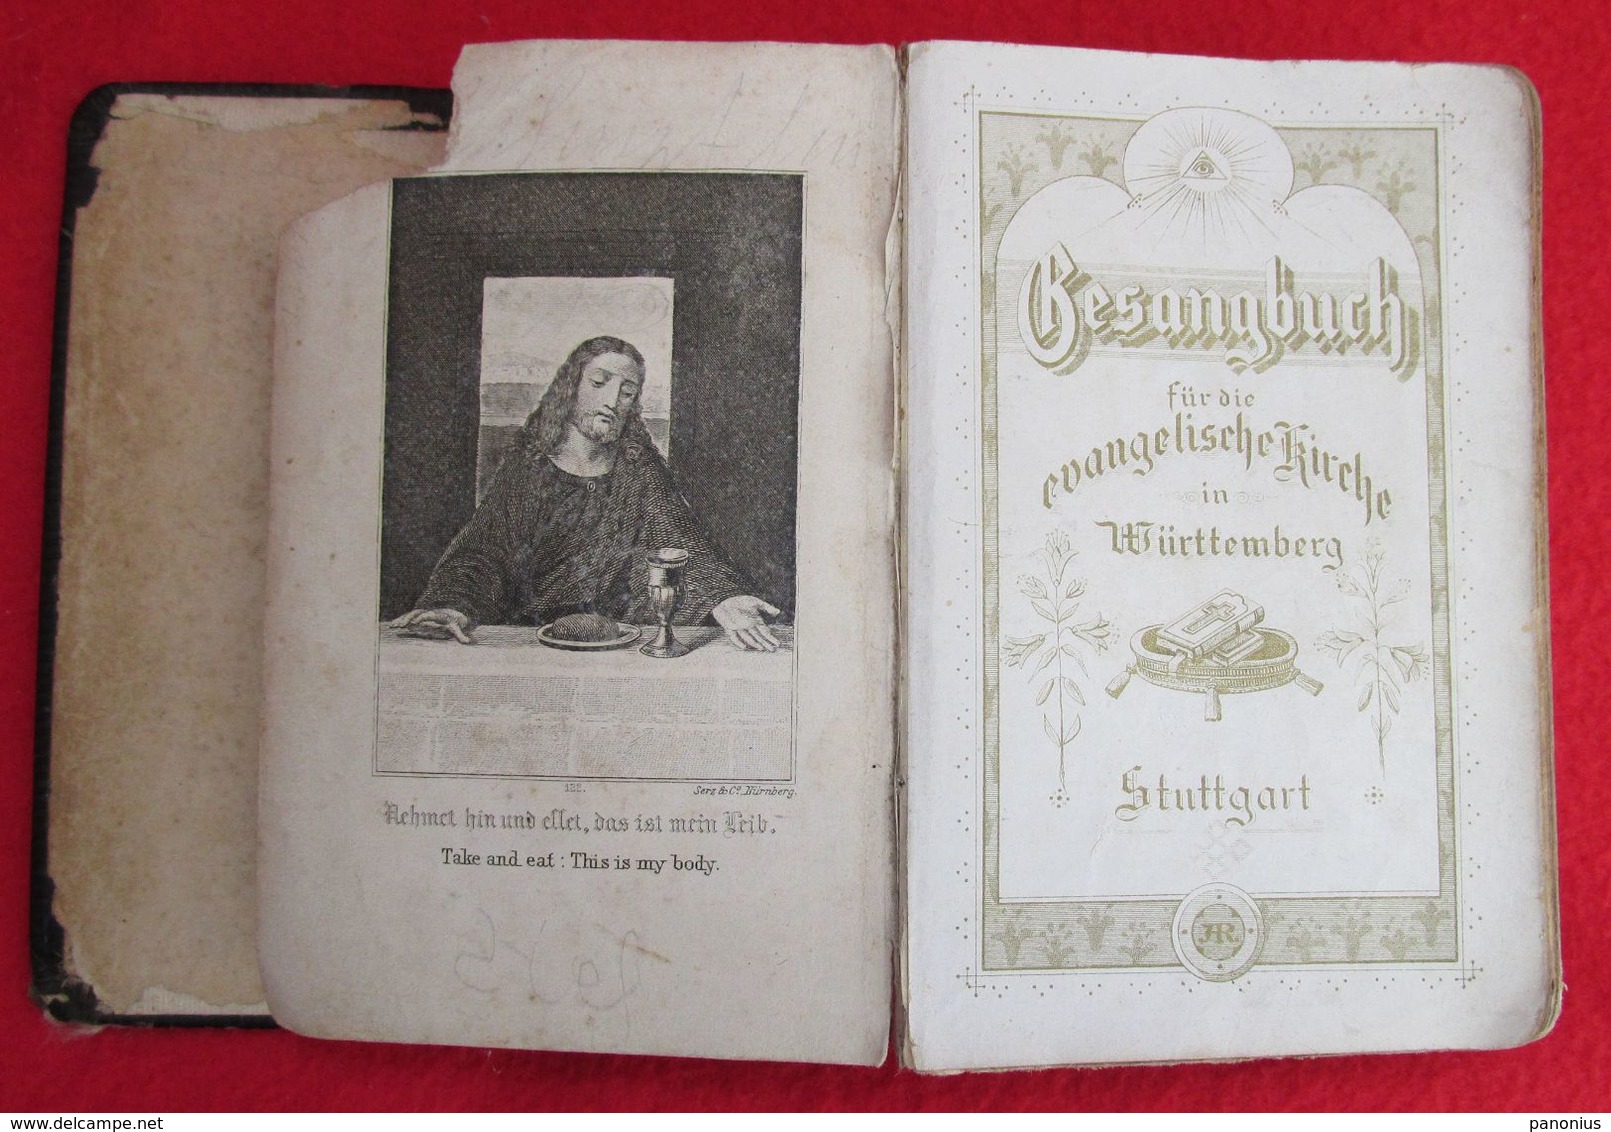 EVANGELISCHE KIRCHE / EVANGELICAL CHURCH, GEBETSBUCH PRAYER BOOK, STUTTGART, Year 1895 - Christentum